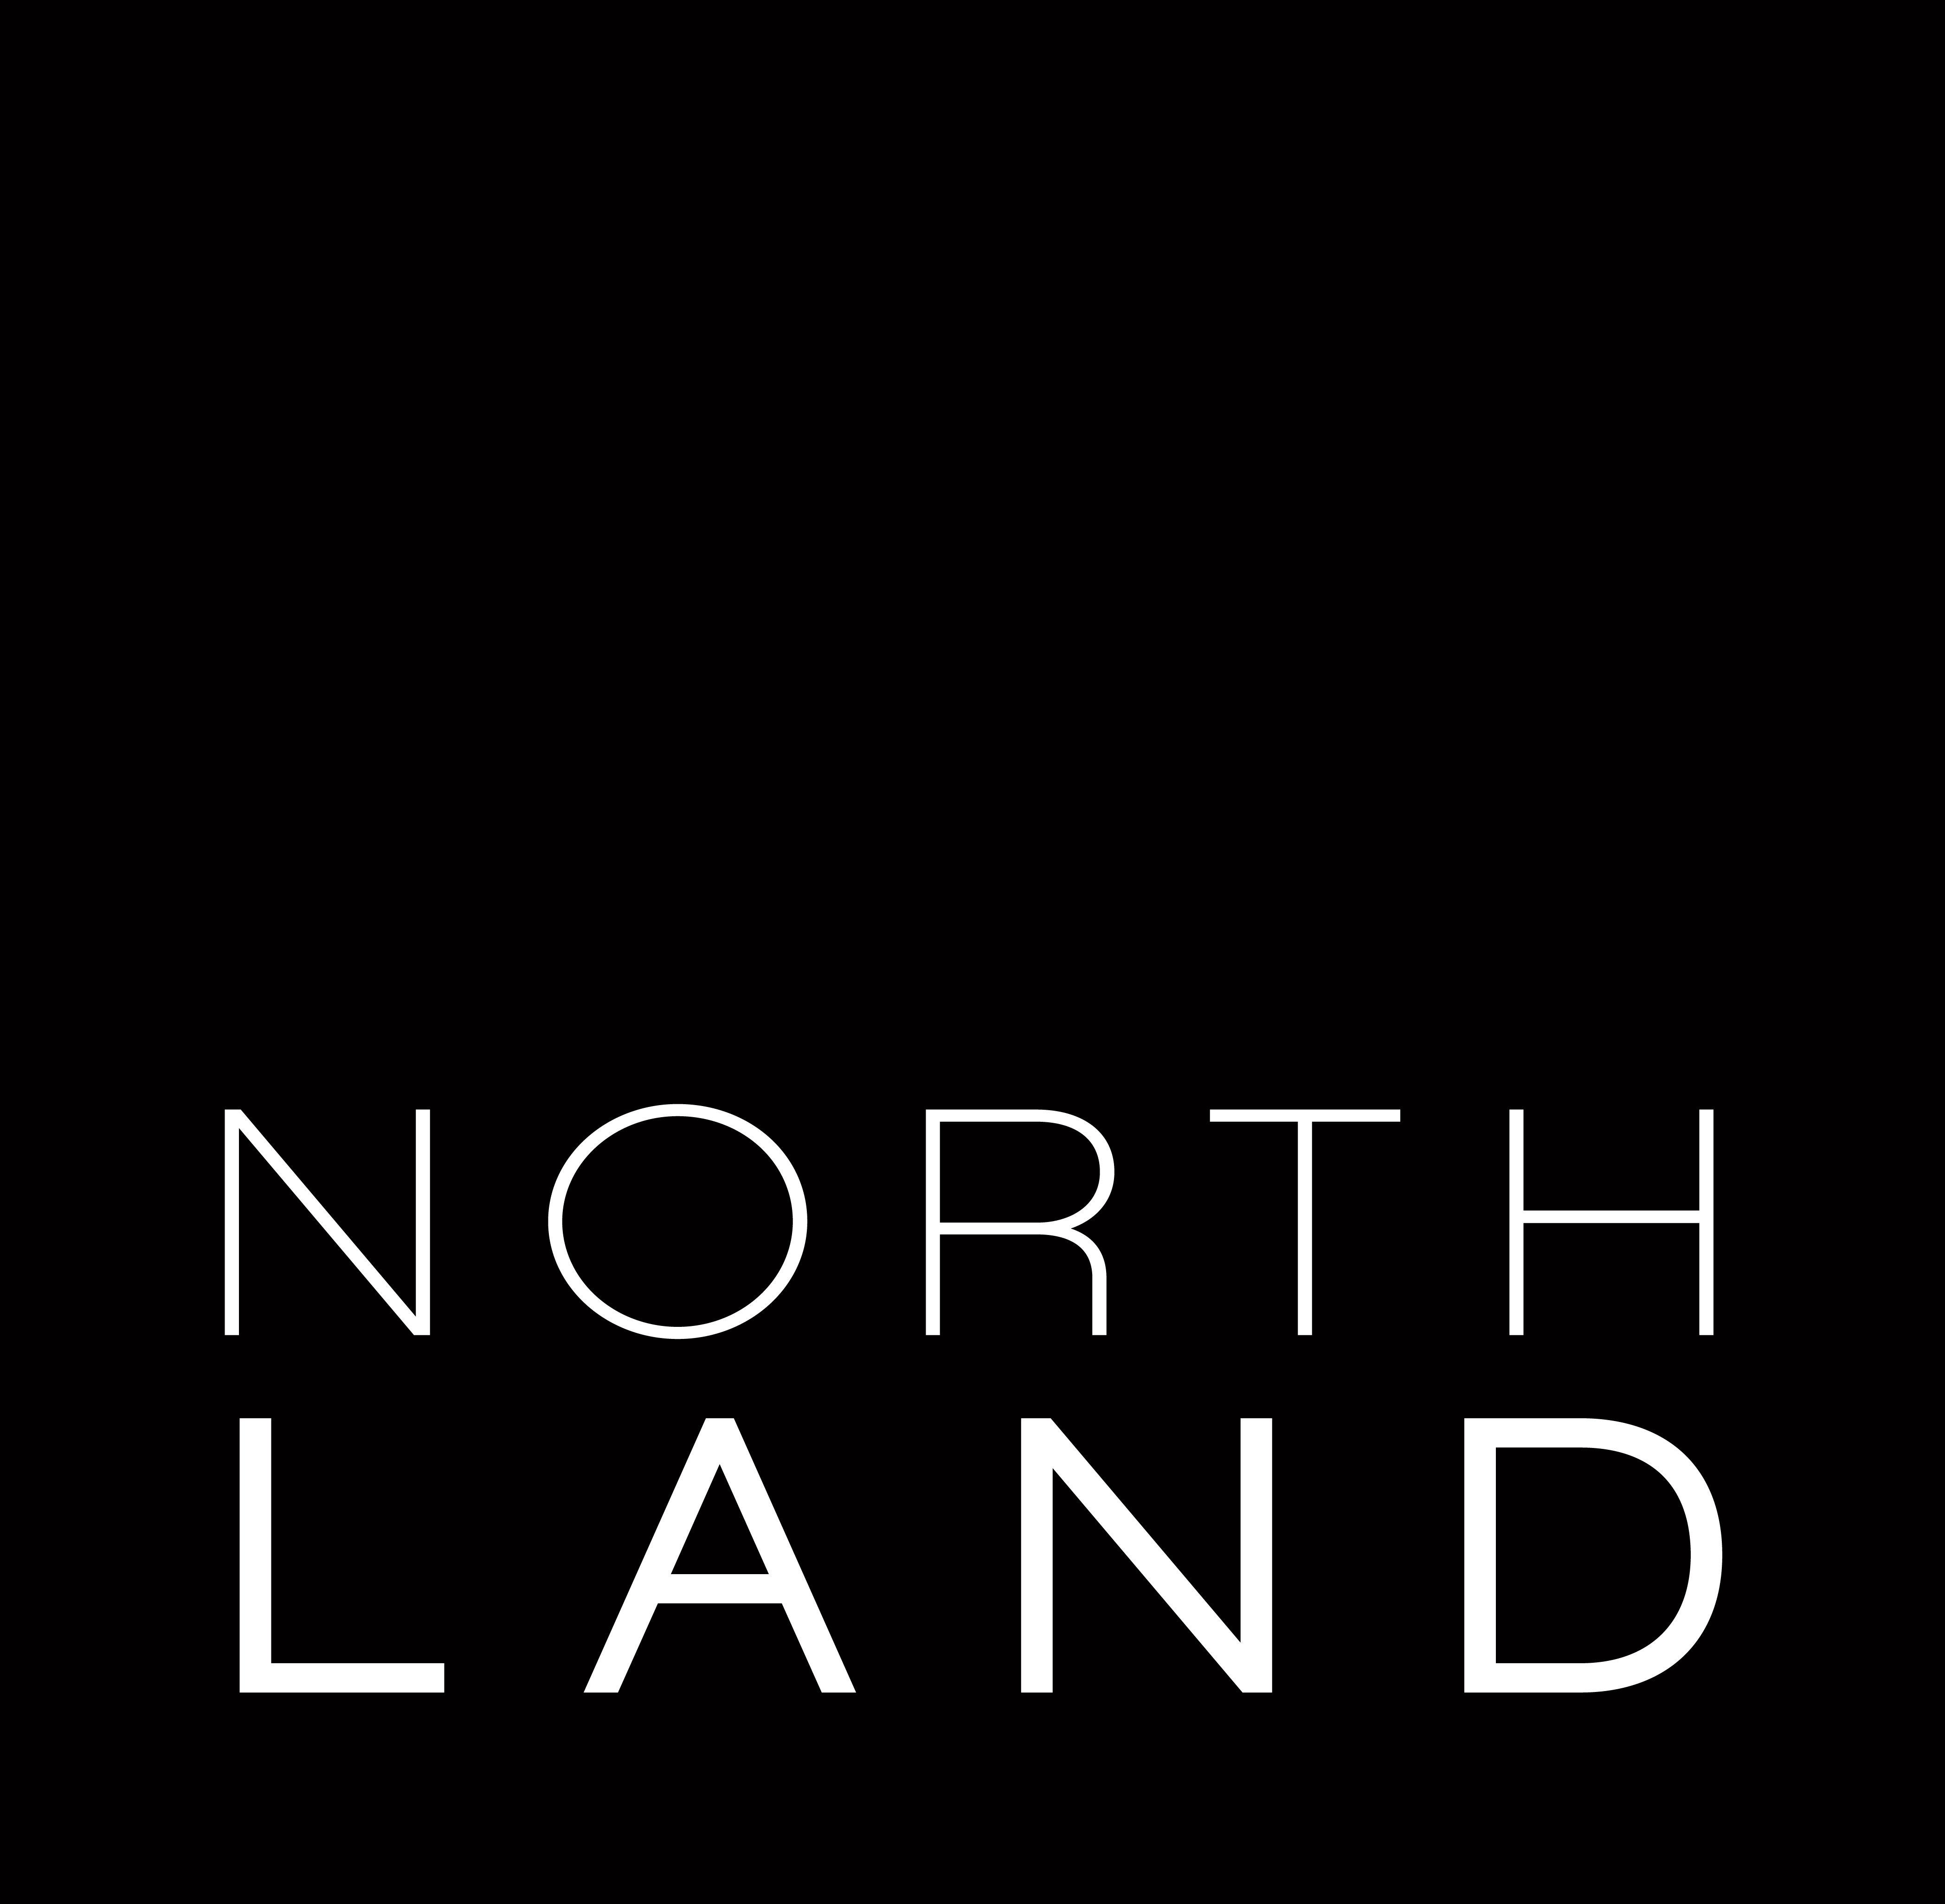 Northland Village Mall - Wikipedia